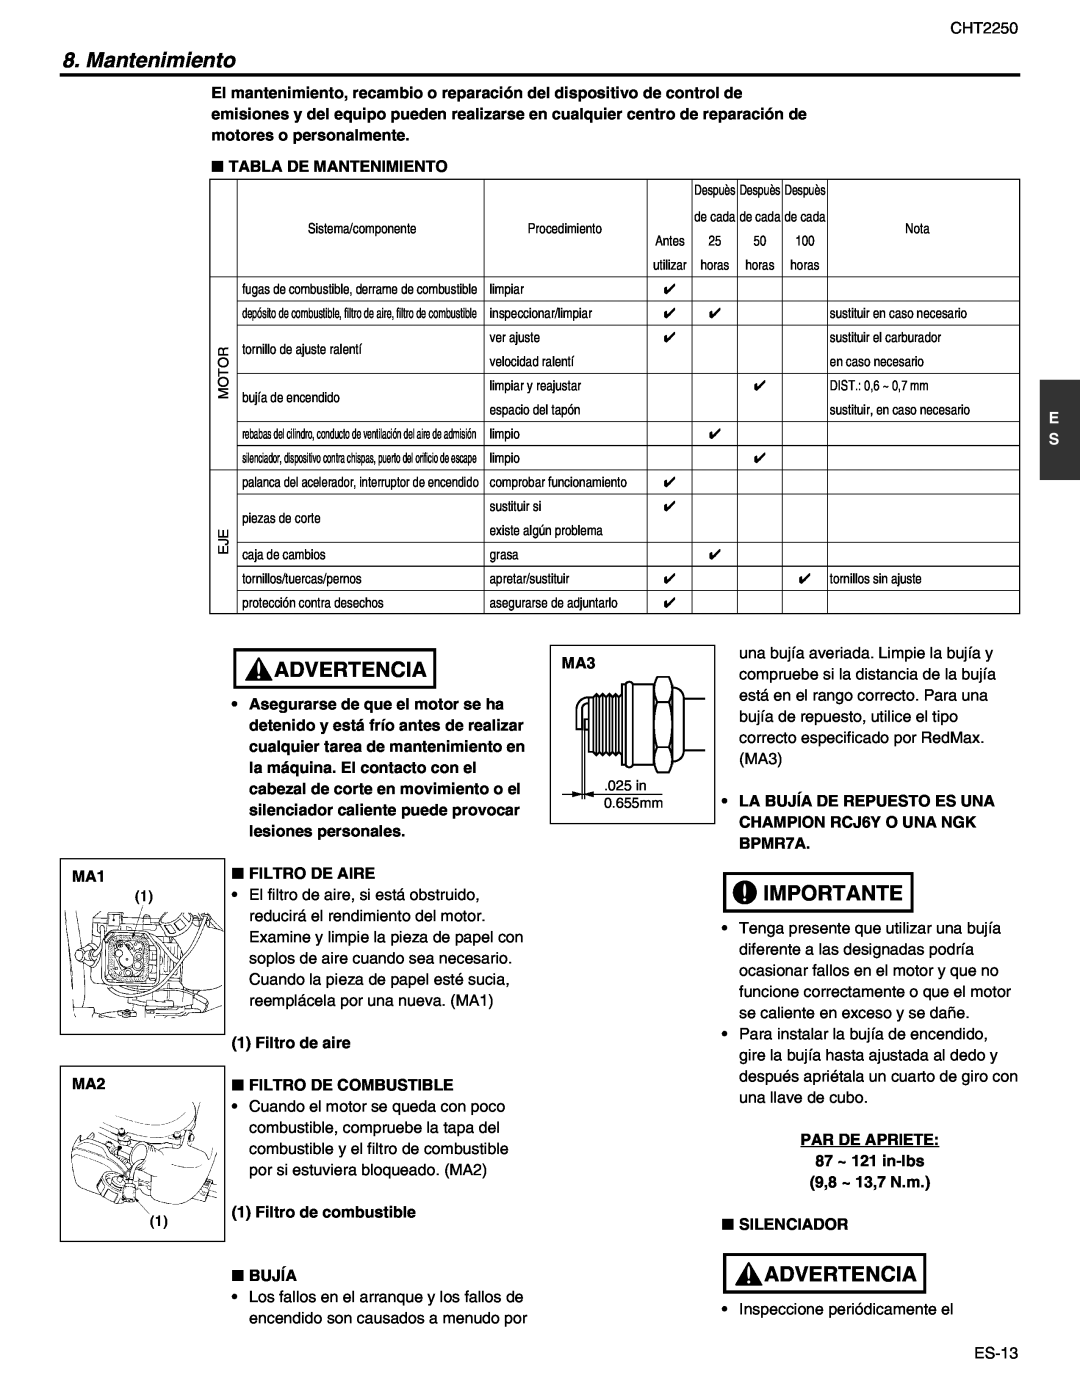 RedMax CHT2250 manual Mantenimiento, Advertencia, Importante, asegurarse de adjuntarlo 